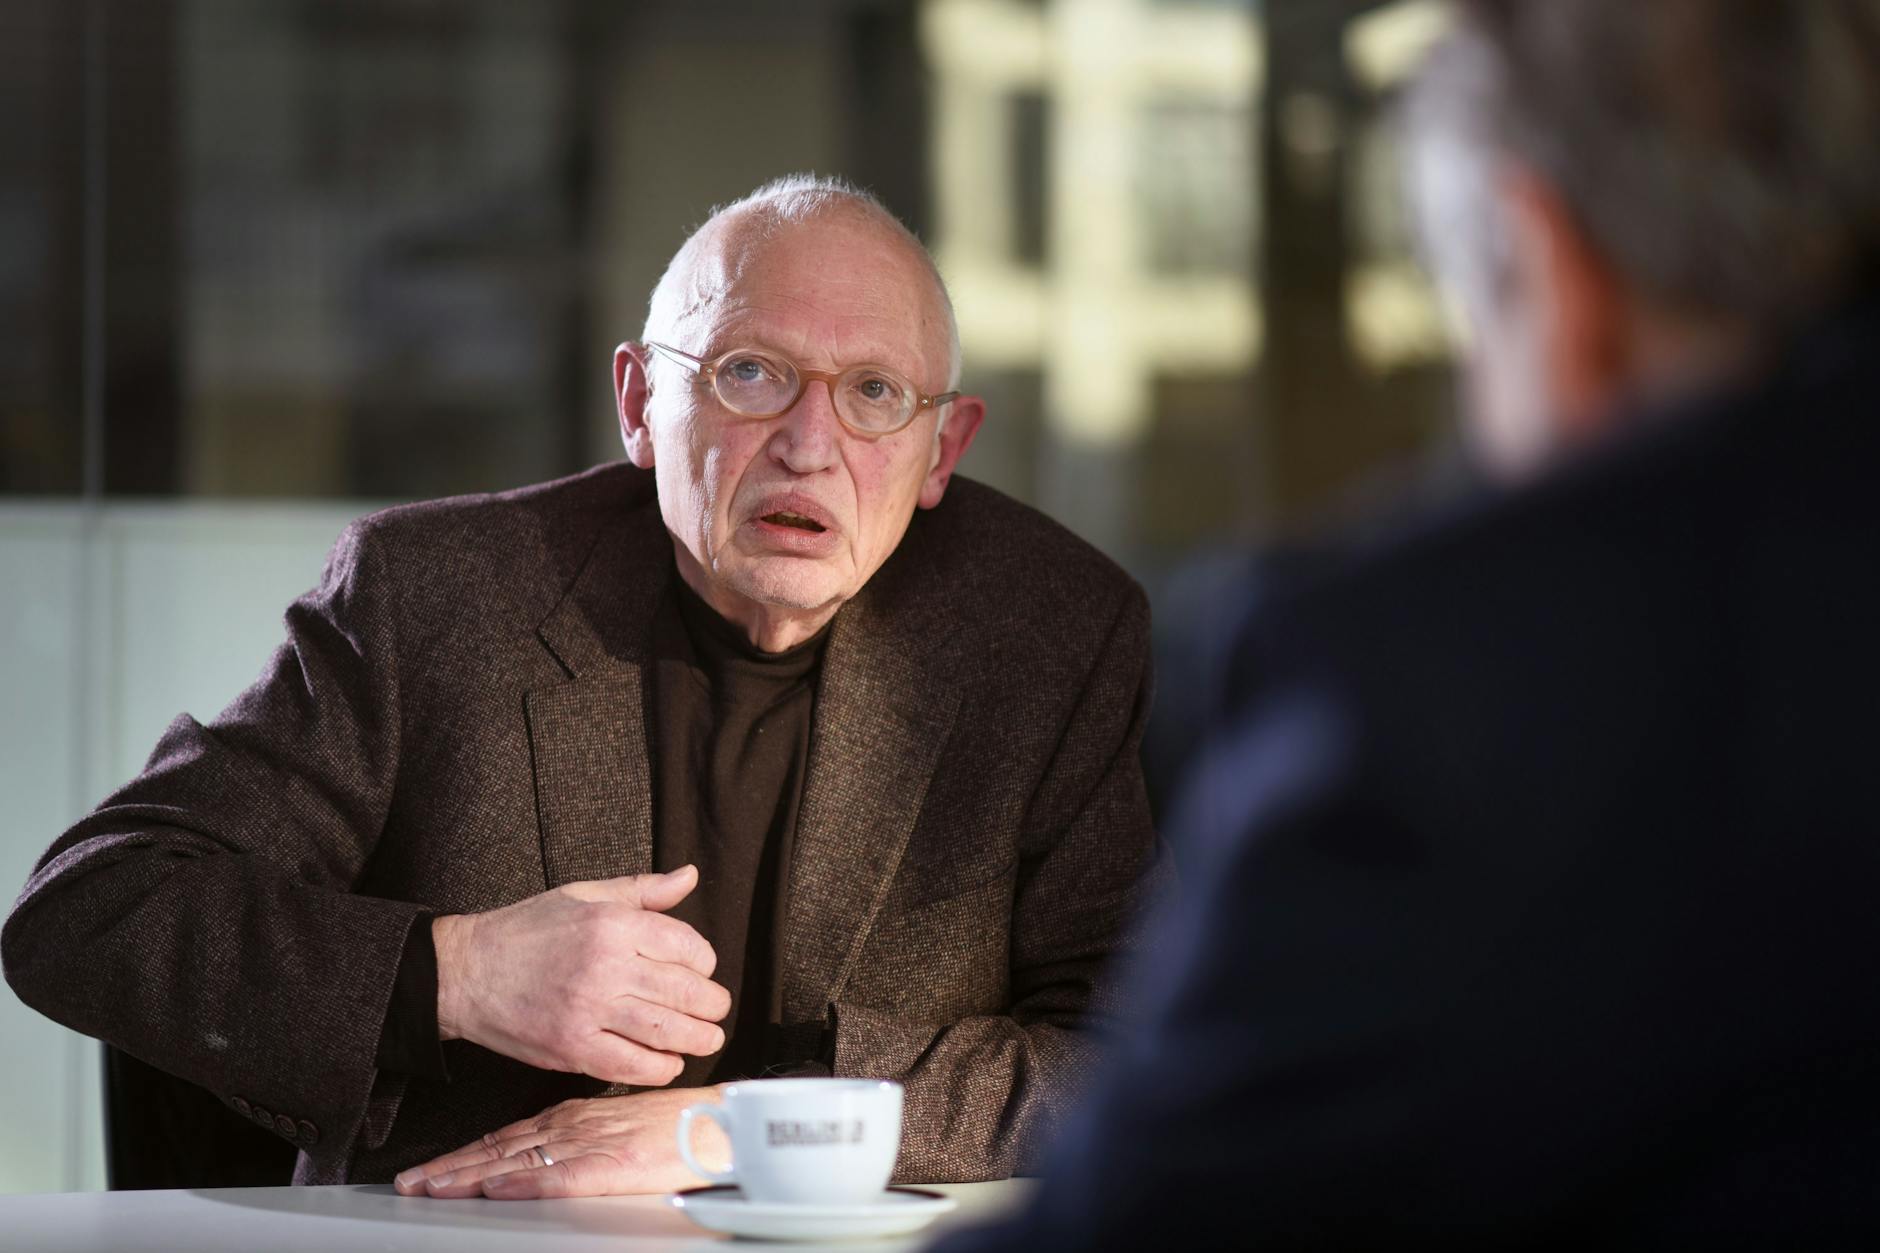 Interview mit Günter Verheugen, SPD-Politiker und ehemaligen EU-Kommissar.  

